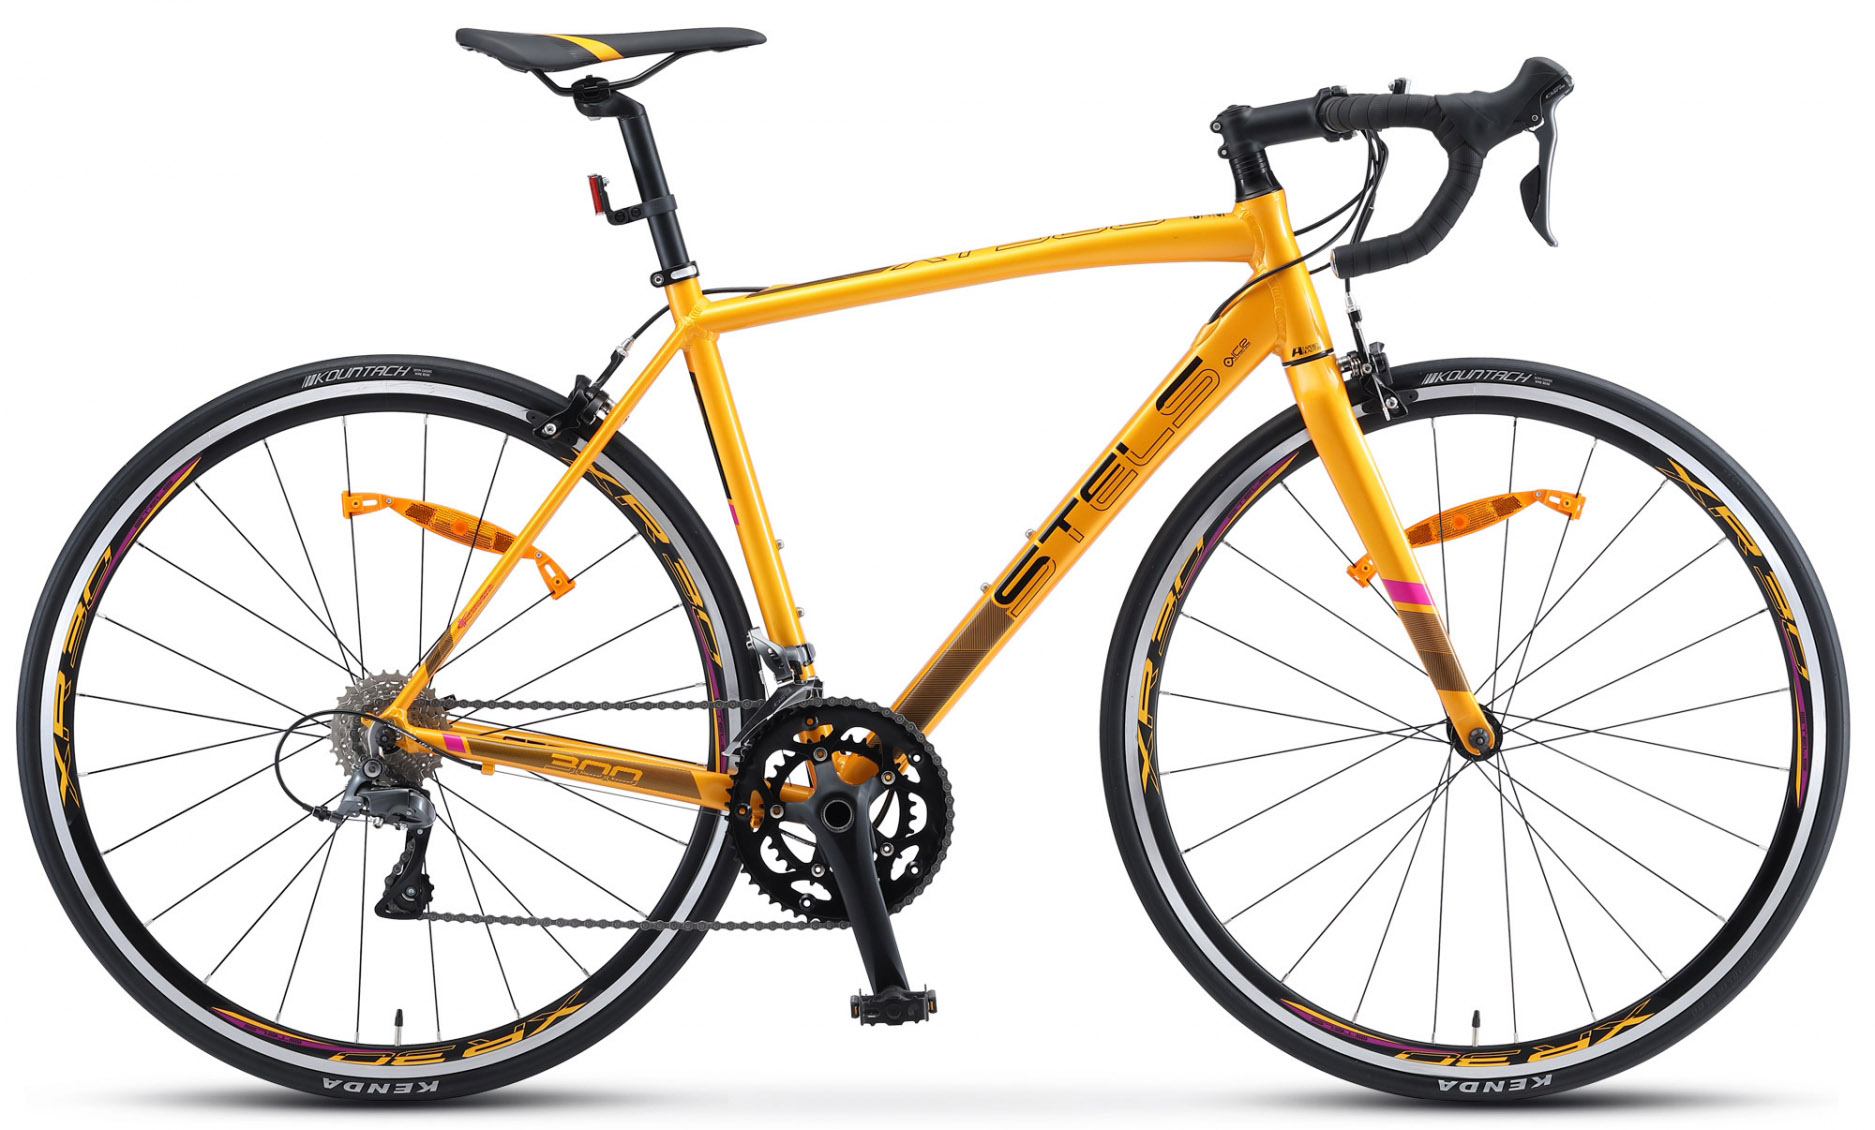  Отзывы о Шоссейном велосипеде Stels XT 300 V010 2020